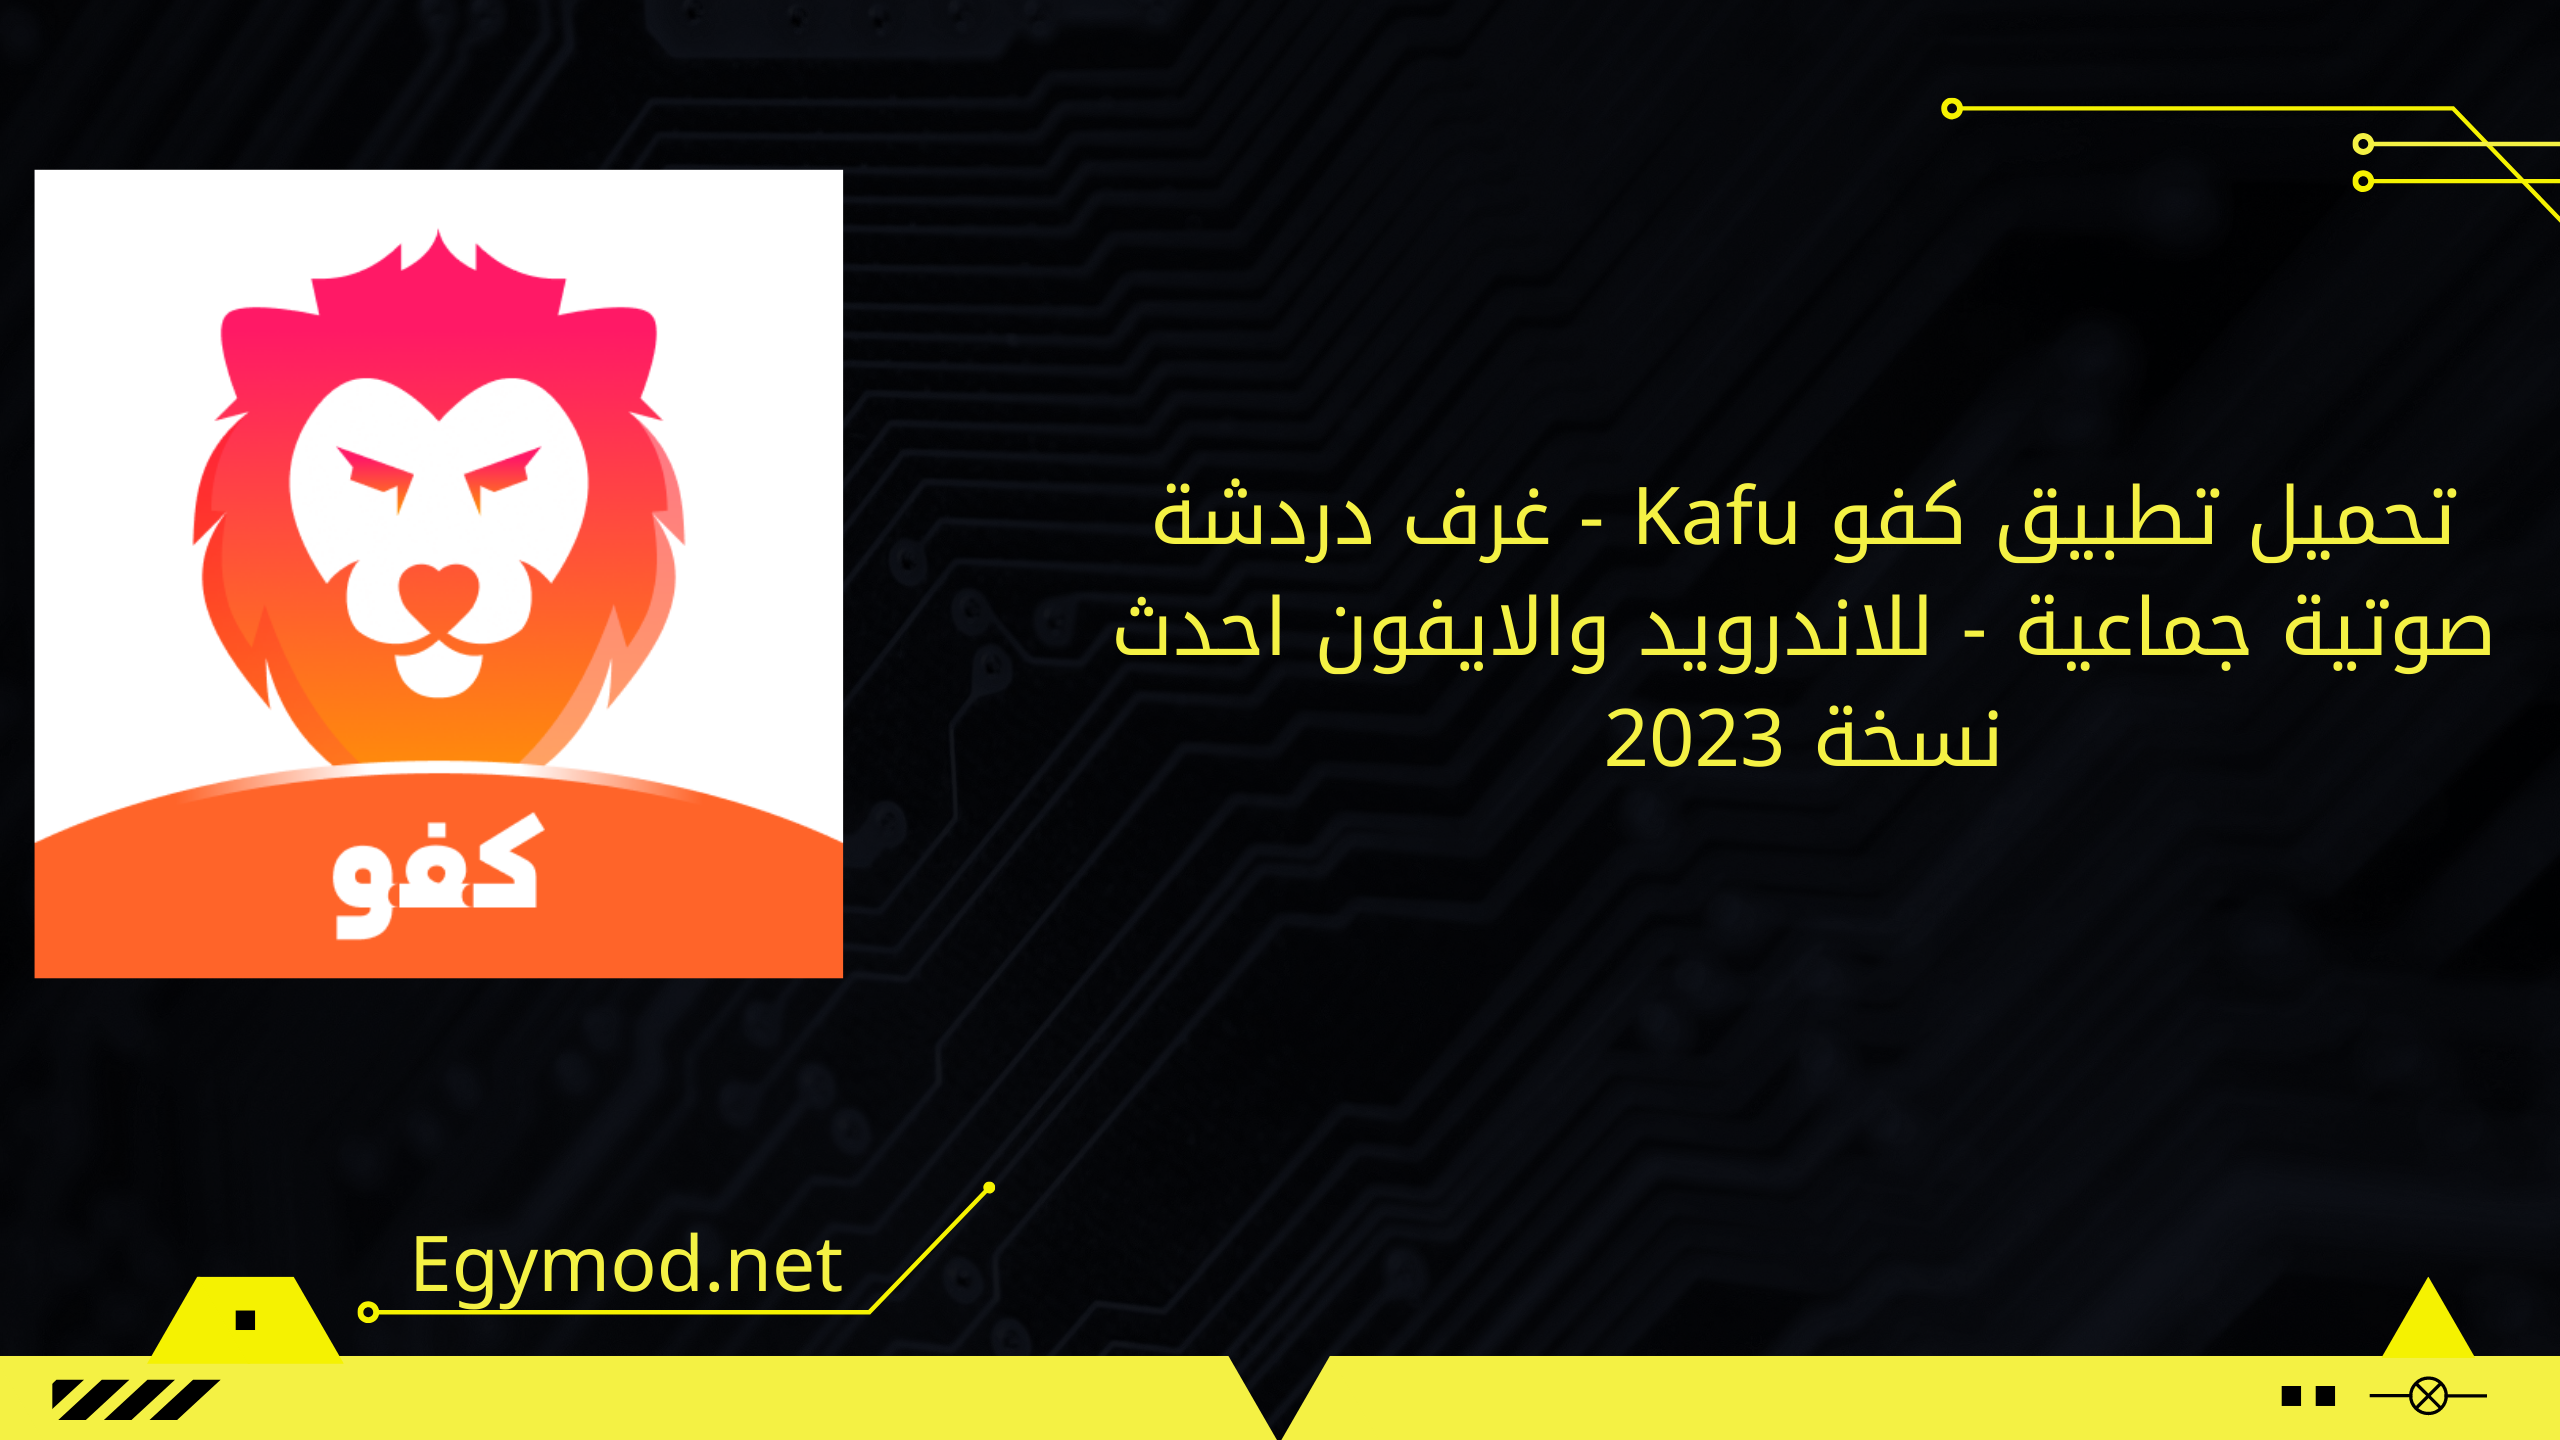 تحميل تطبيق كفو Kafu - غرف دردشة صوتية جماعية - للاندرويد والايفون احدث نسخة 2023